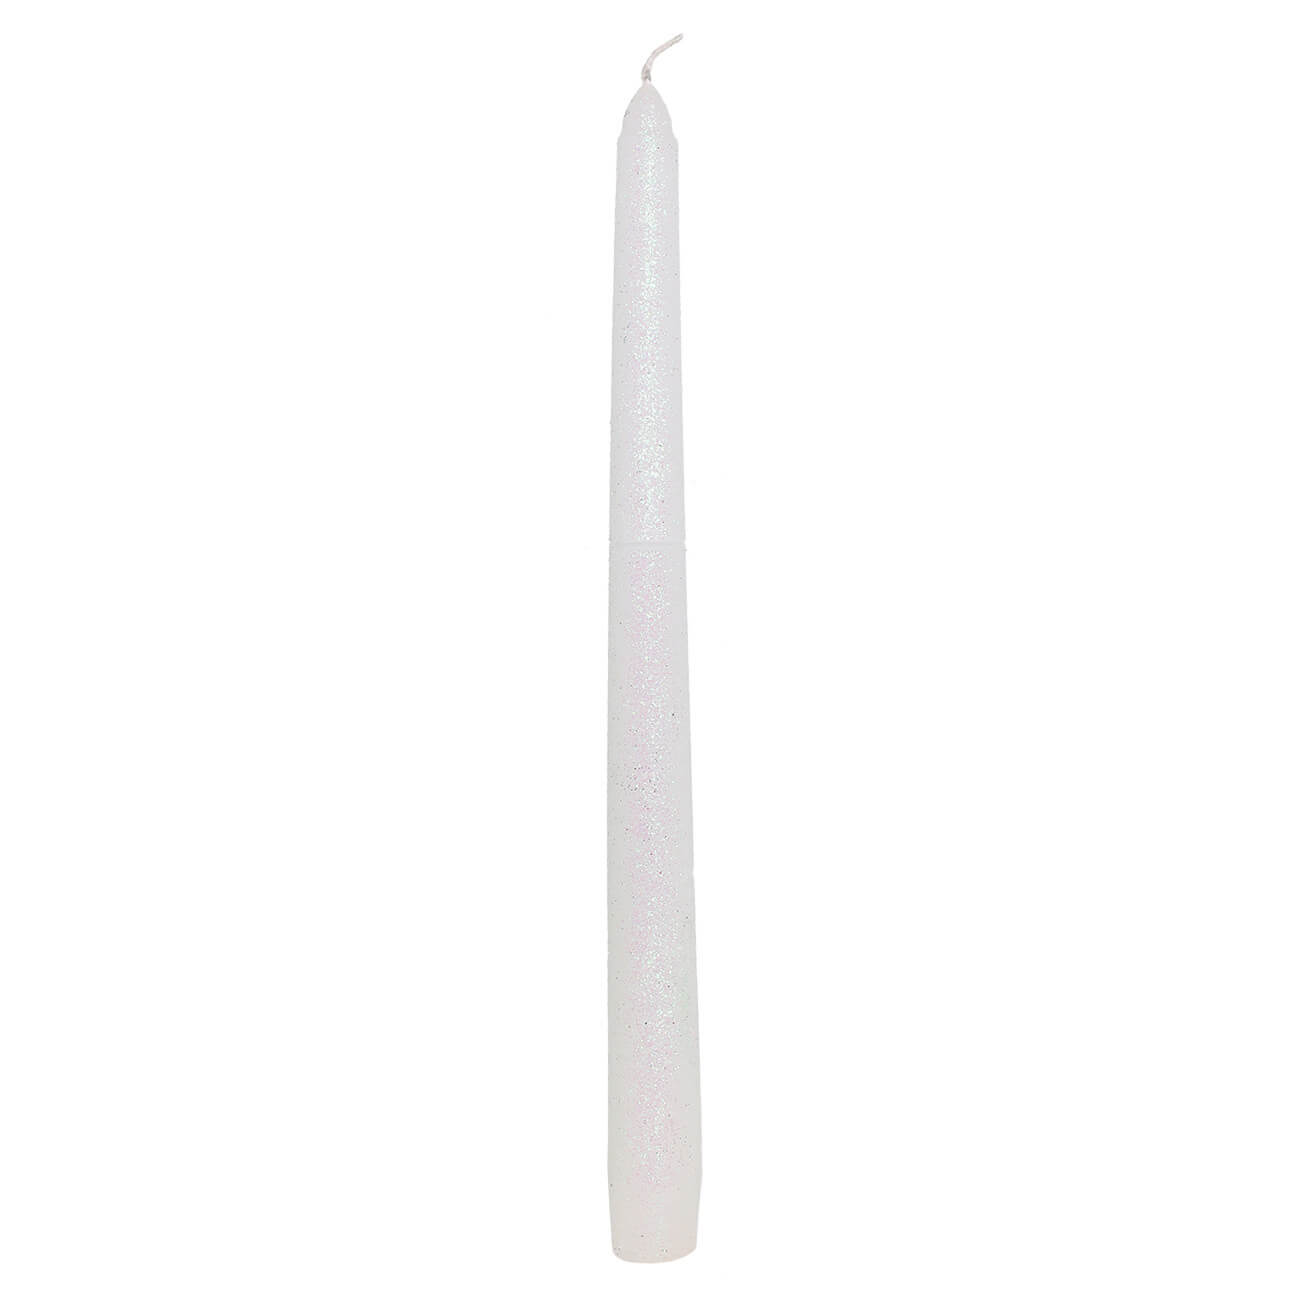 Свеча, 25 см, тонкая, белая, Metallic glow свеча 14 см цилиндрическая с блестками серебристая metallic glow